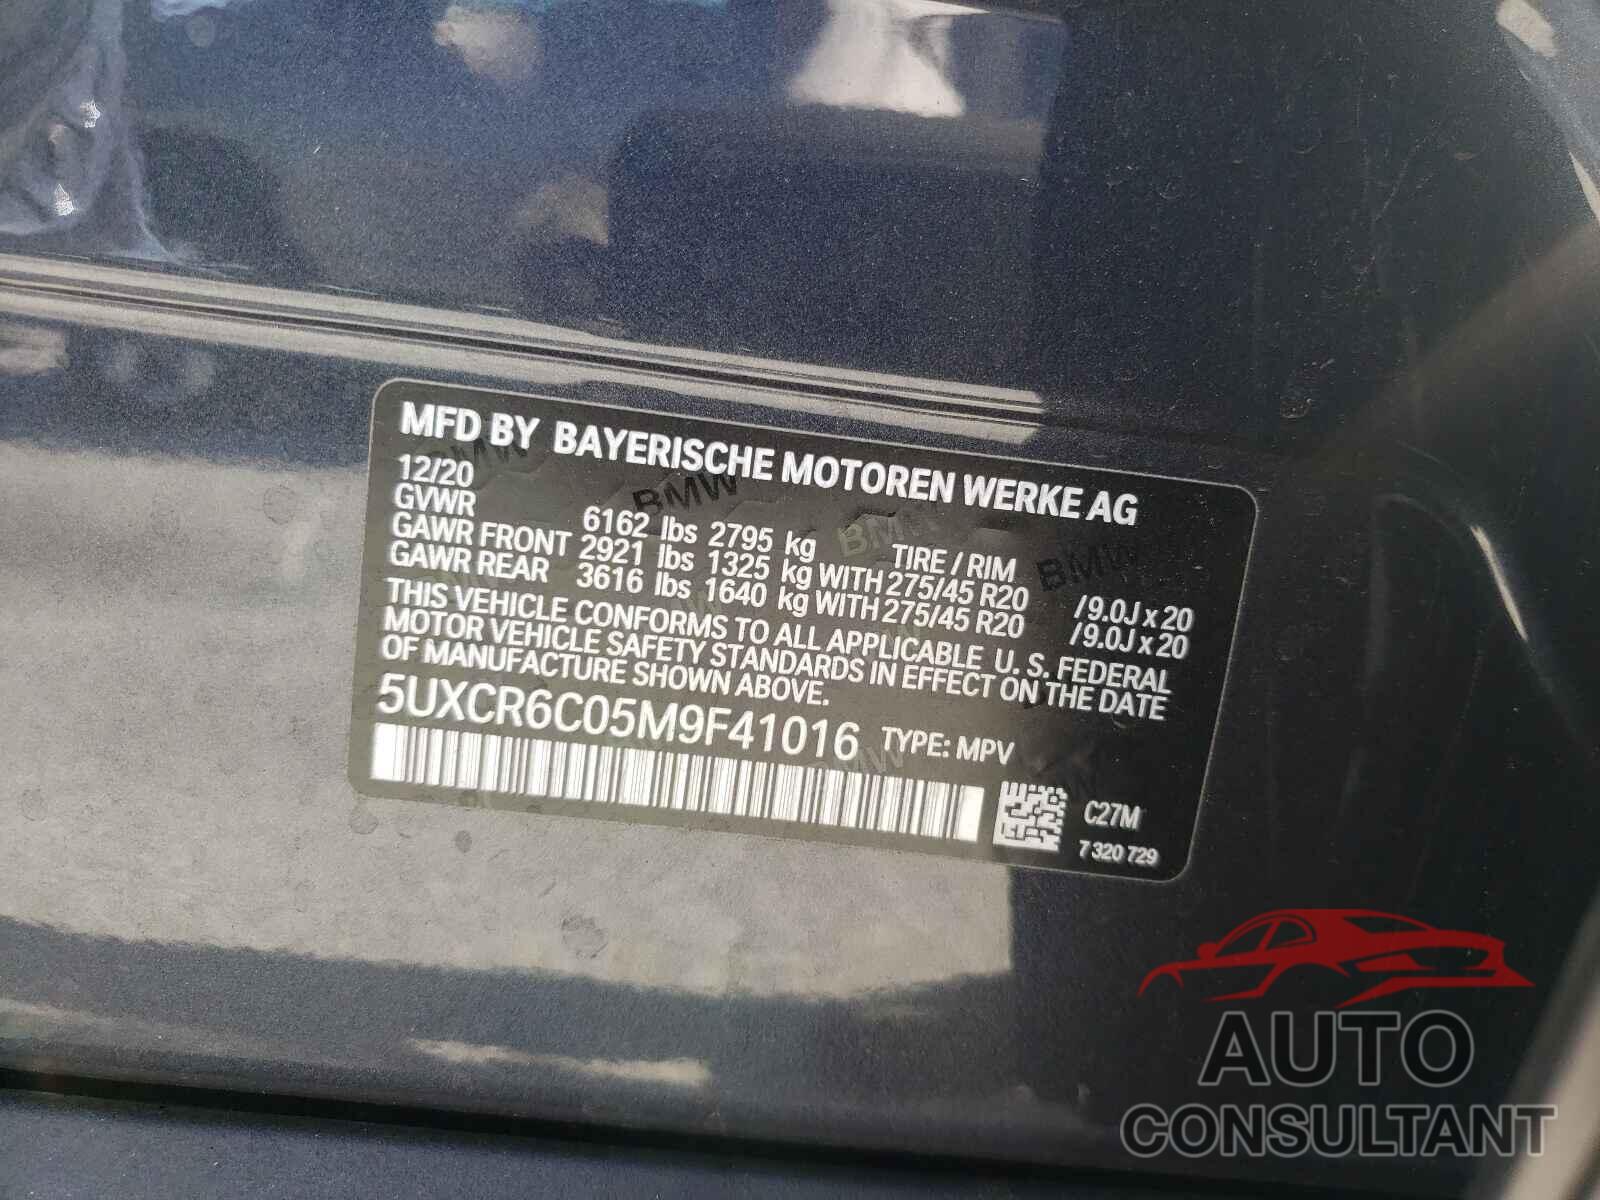 BMW X5 2021 - 5UXCR6C05M9F41016